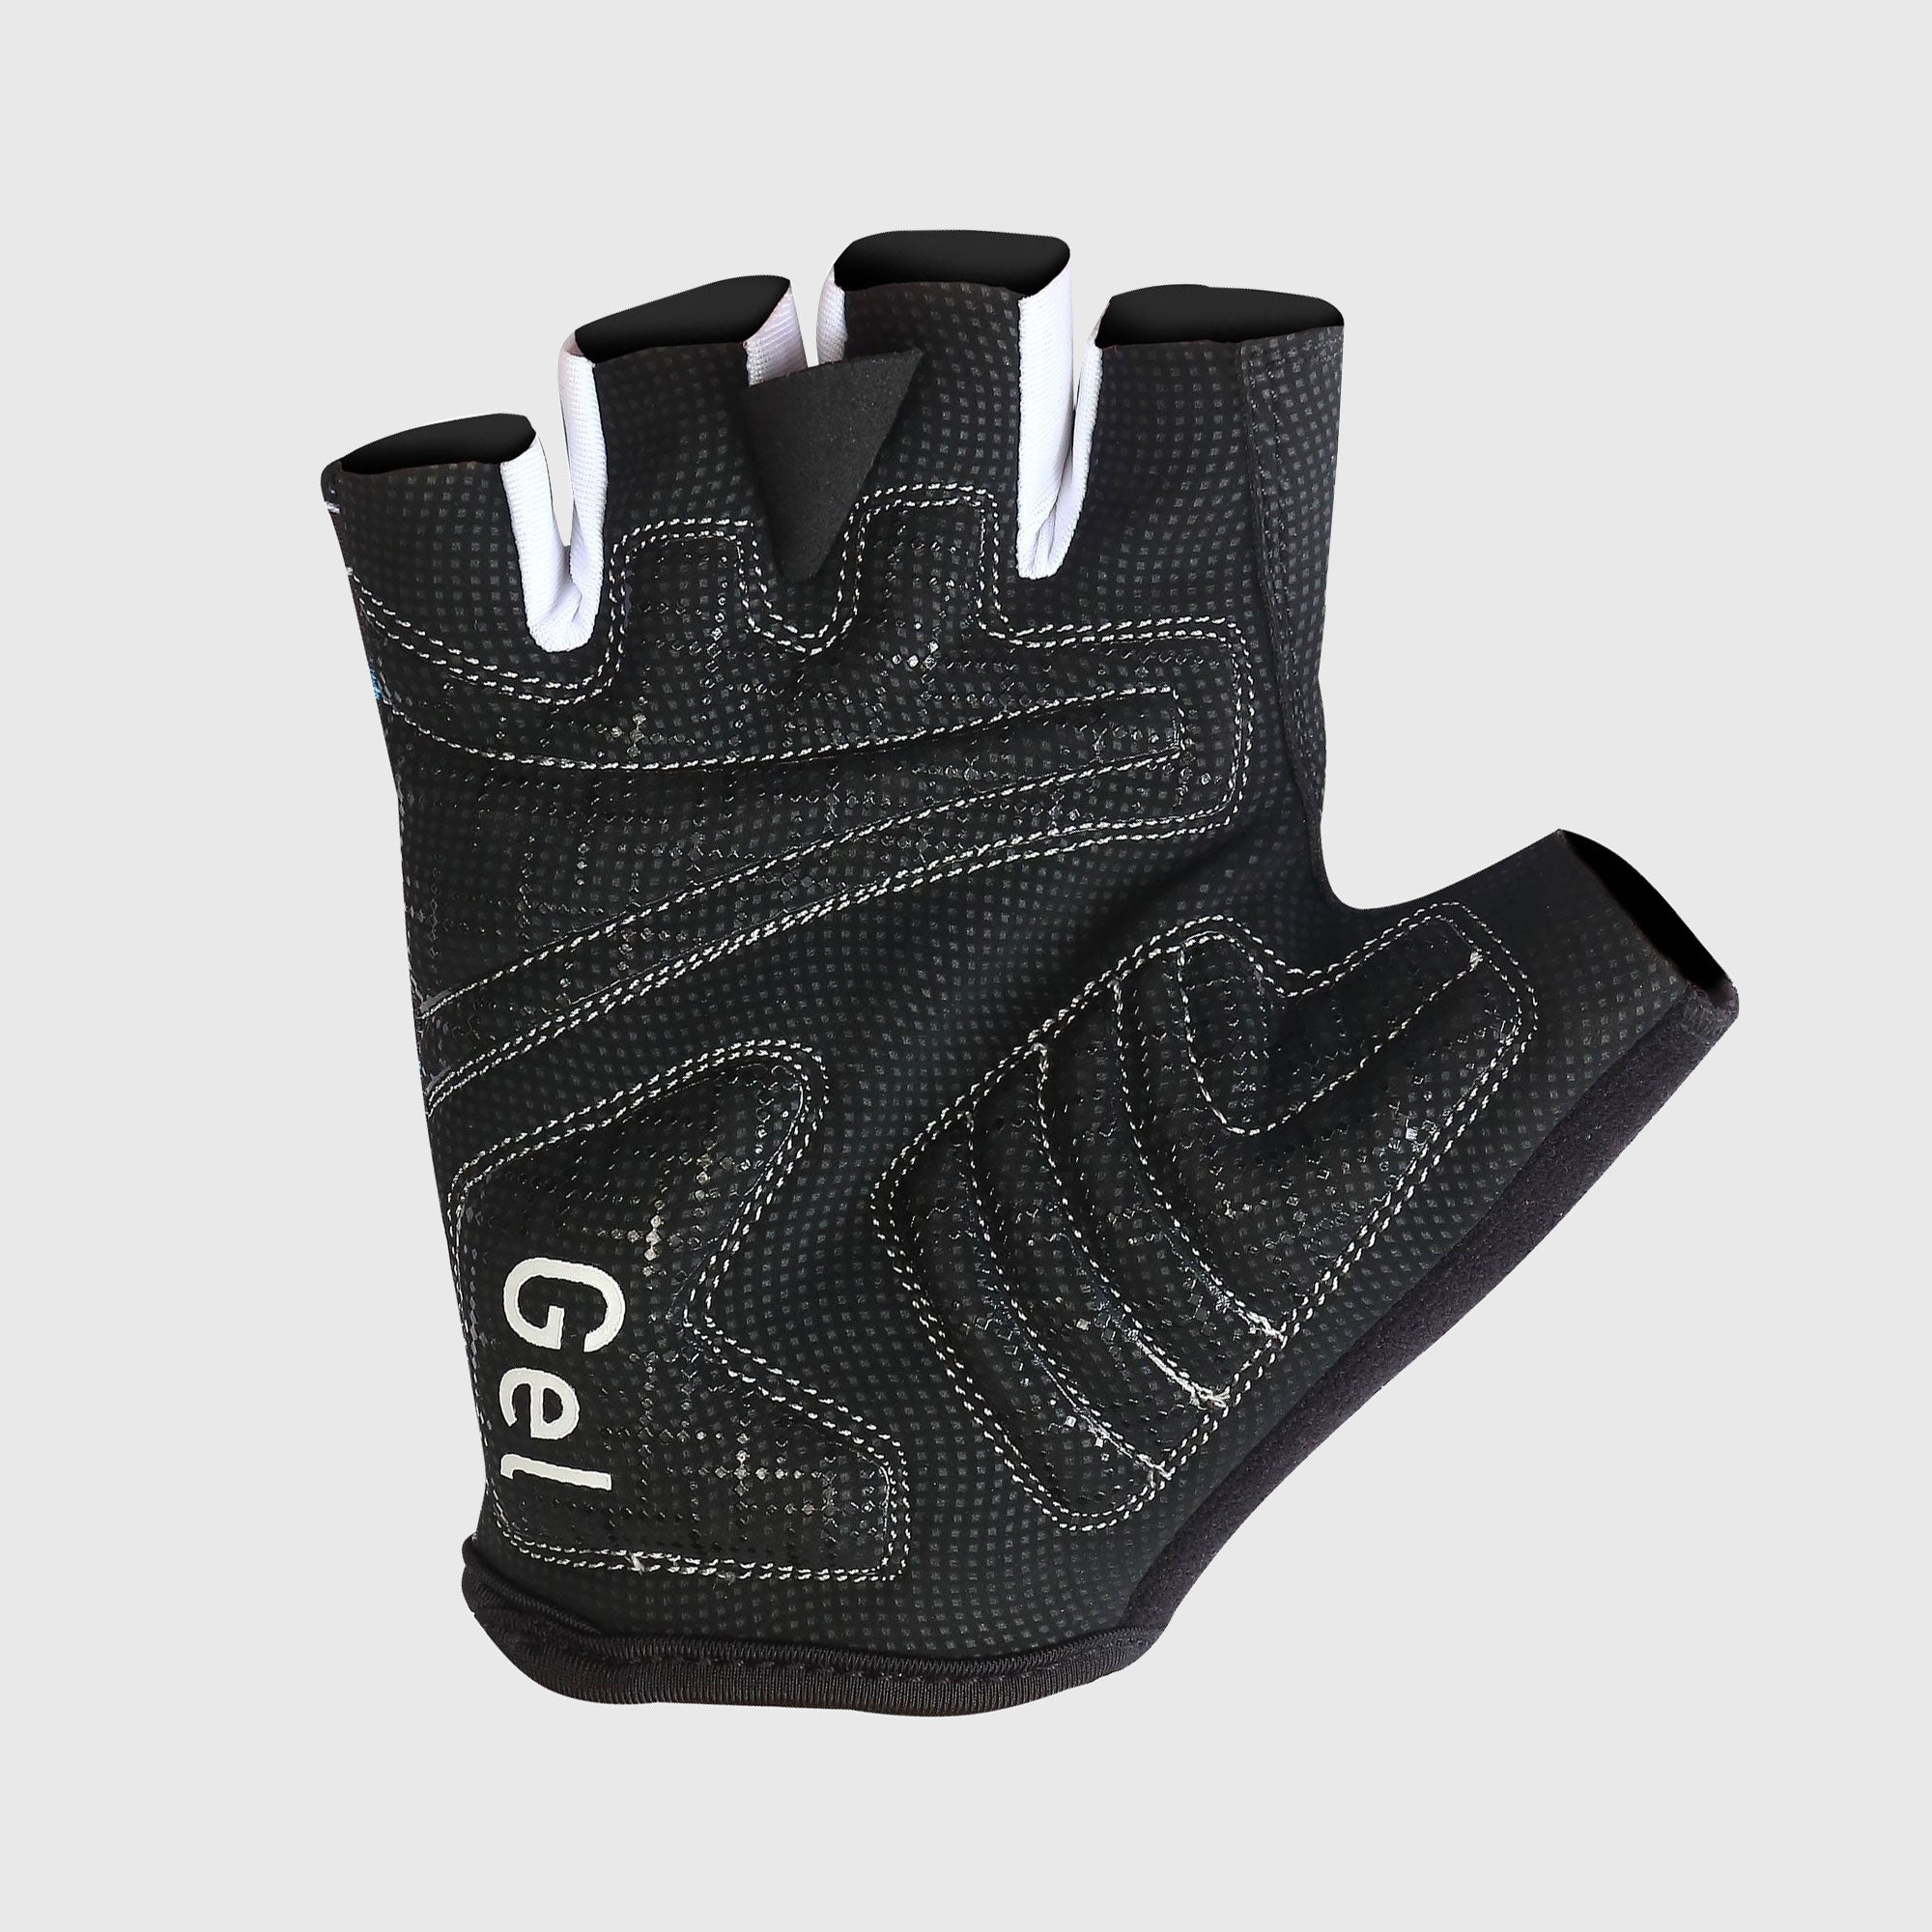 Fdx Navy Blue Short Finger Cycling Gloves for Summer MTB Road Bike fingerless, anti slip & Breathable - Vega